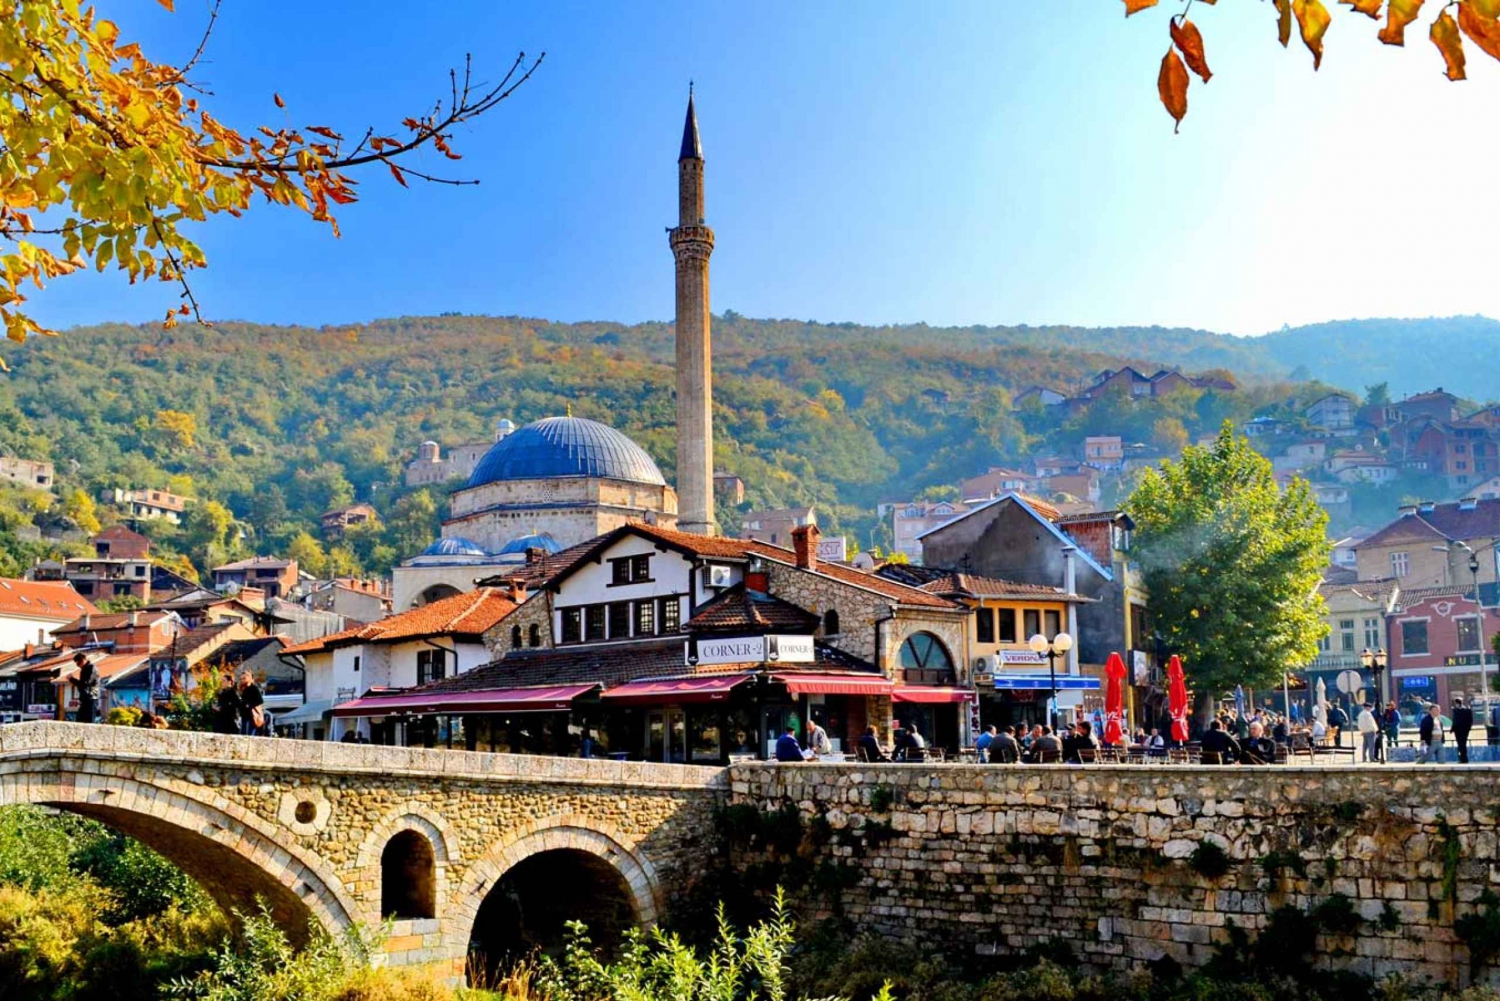 Day tour of Prizren , Kosovo from Tirana